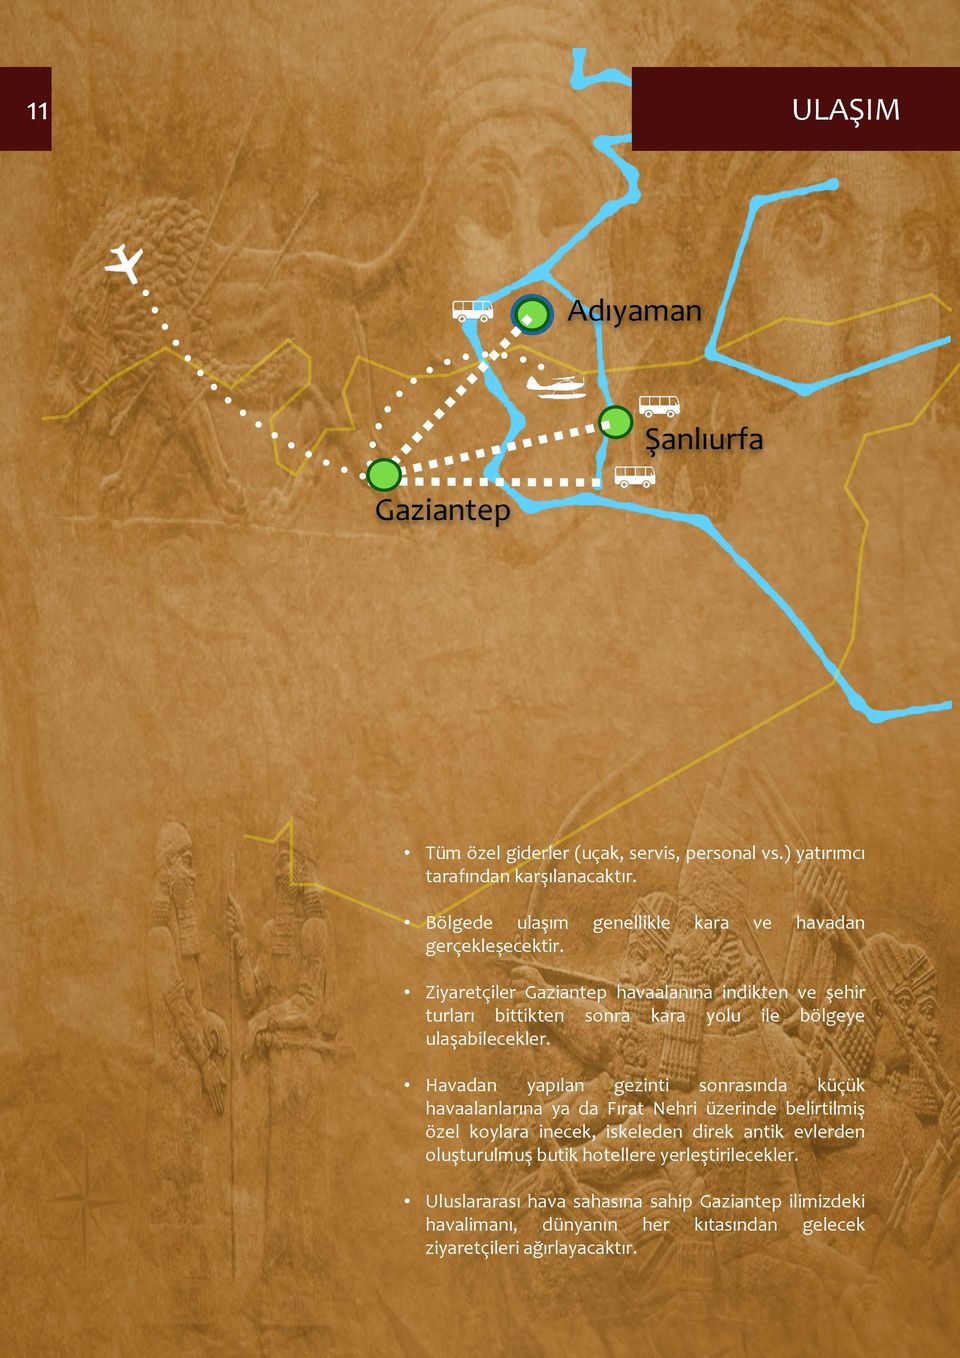 Ziyaretçiler Gaziantep havaalanına indikten ve şehir turları bittikten sonra kara yolu ile bölgeye ulaşabilecekler.